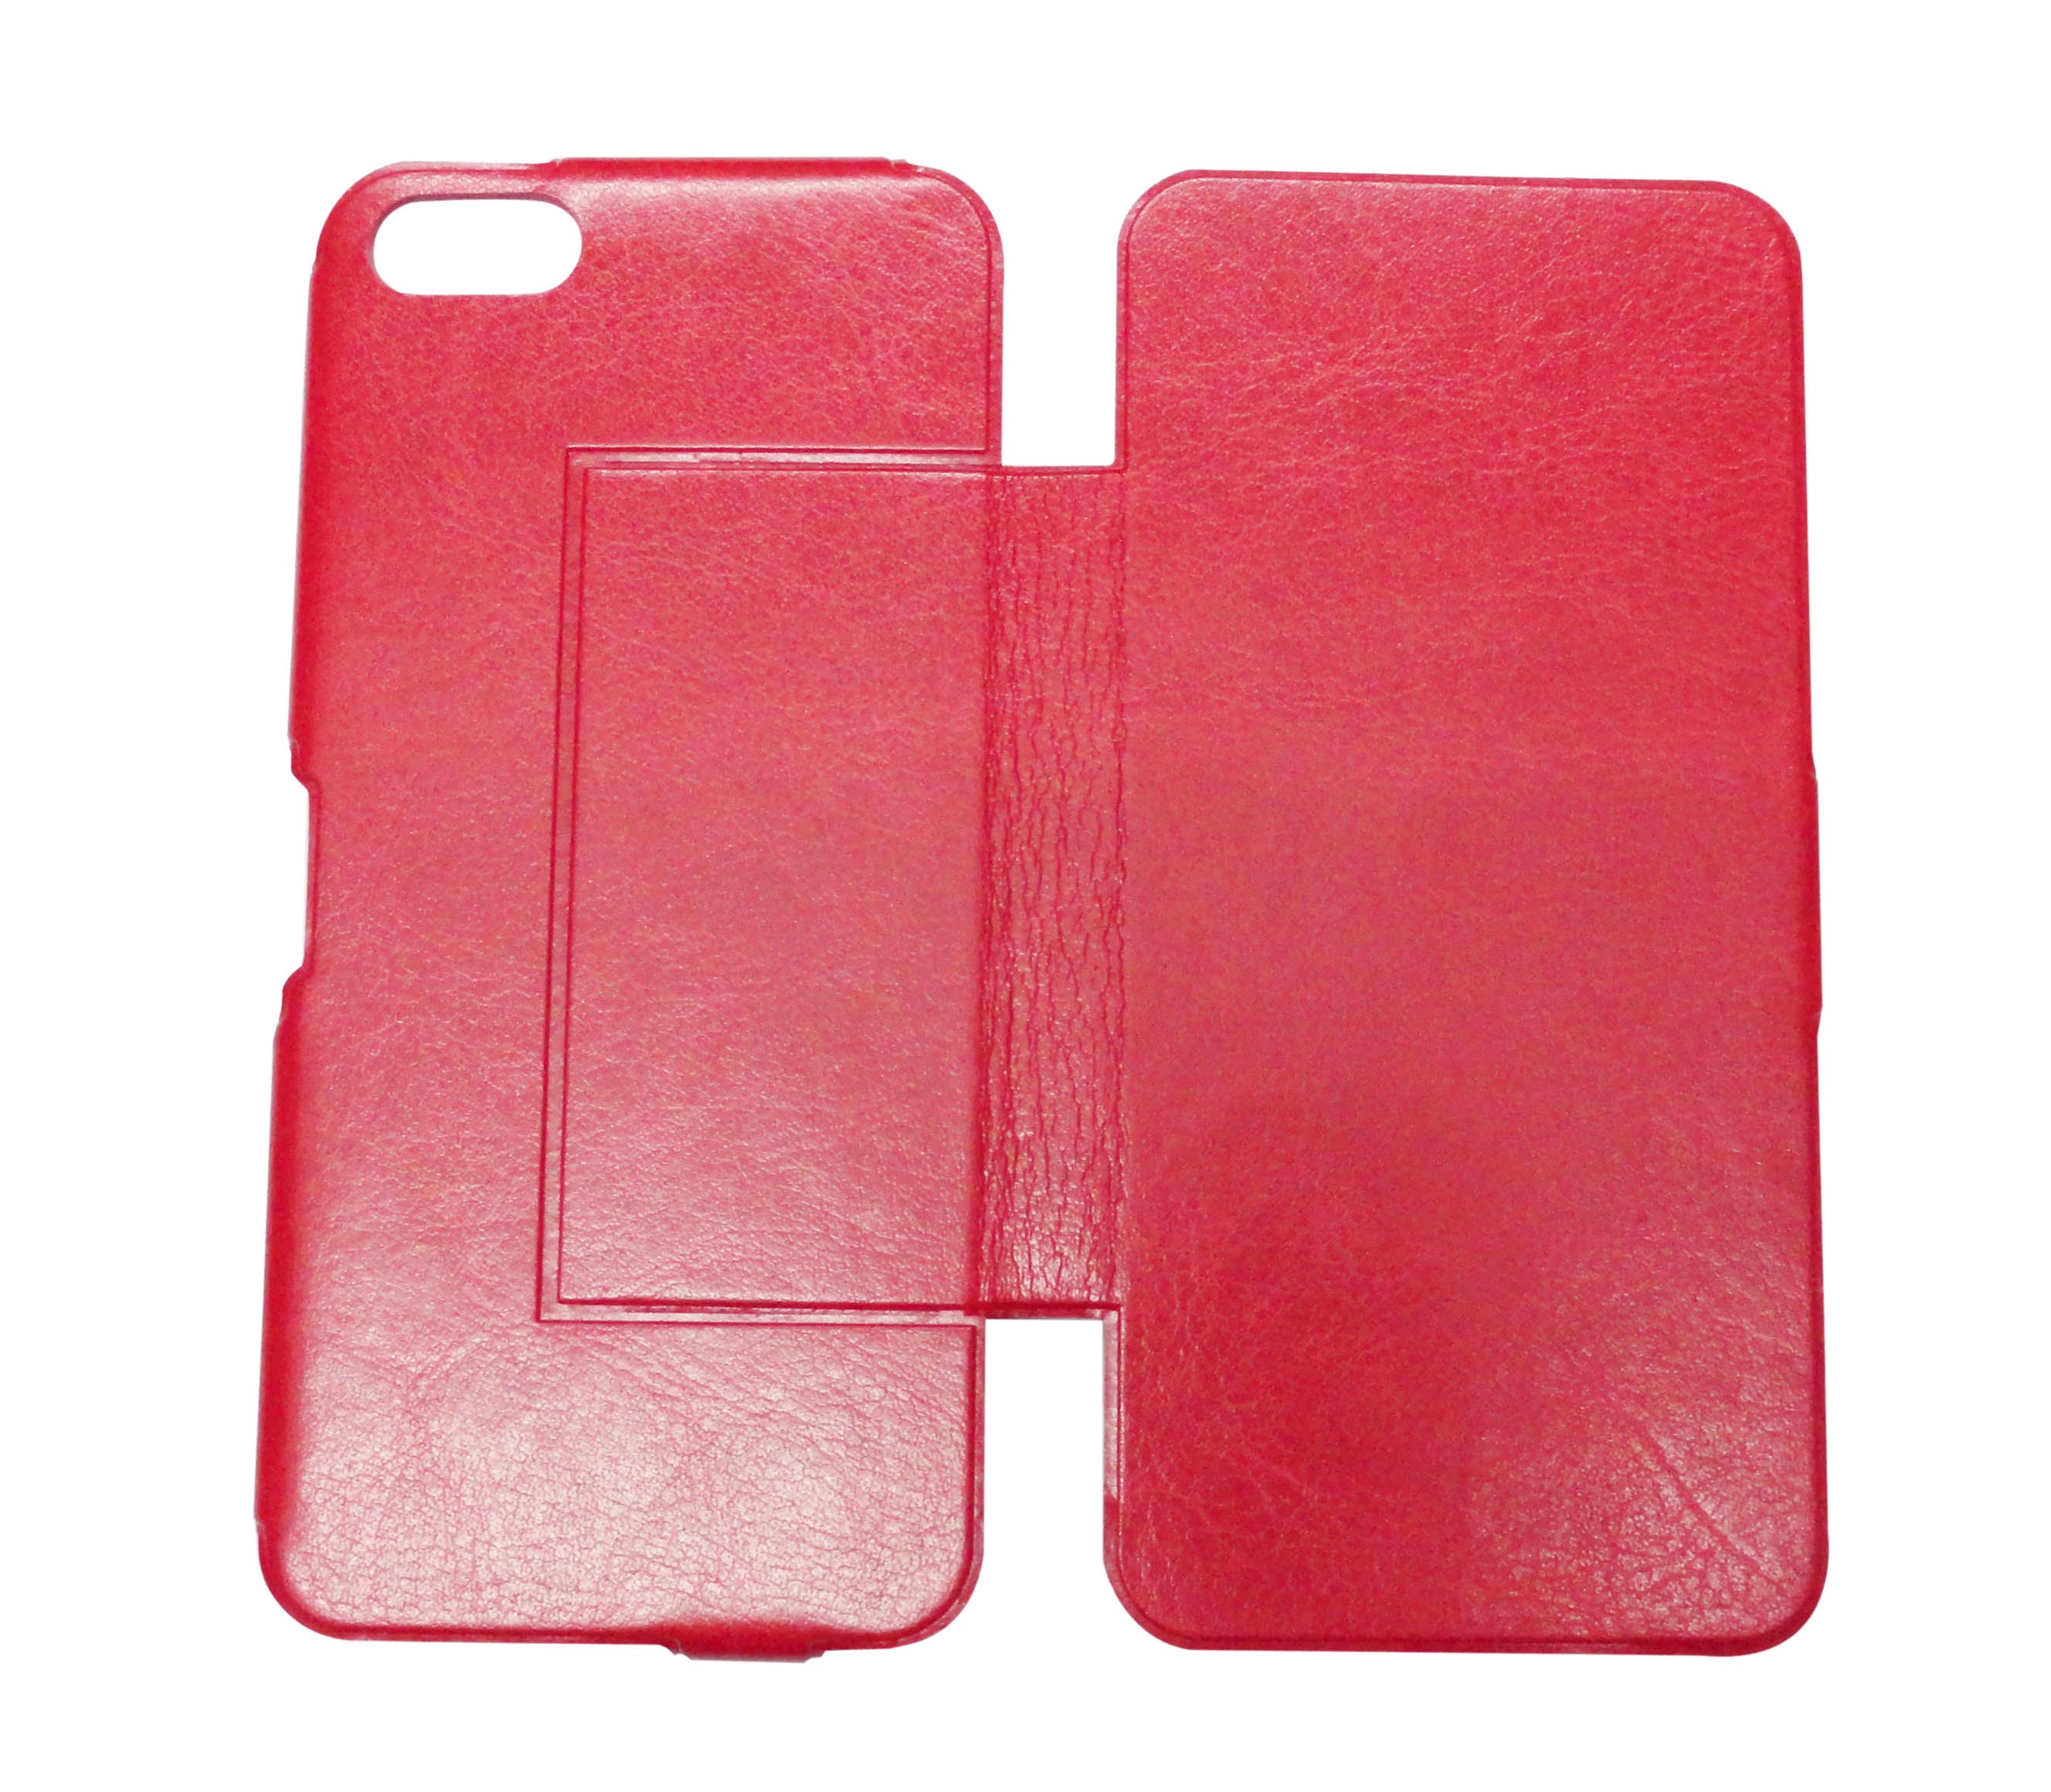 厂家批发苹果iphone5手机壳保护套韩版超薄皮套左右翻  红色左右翻